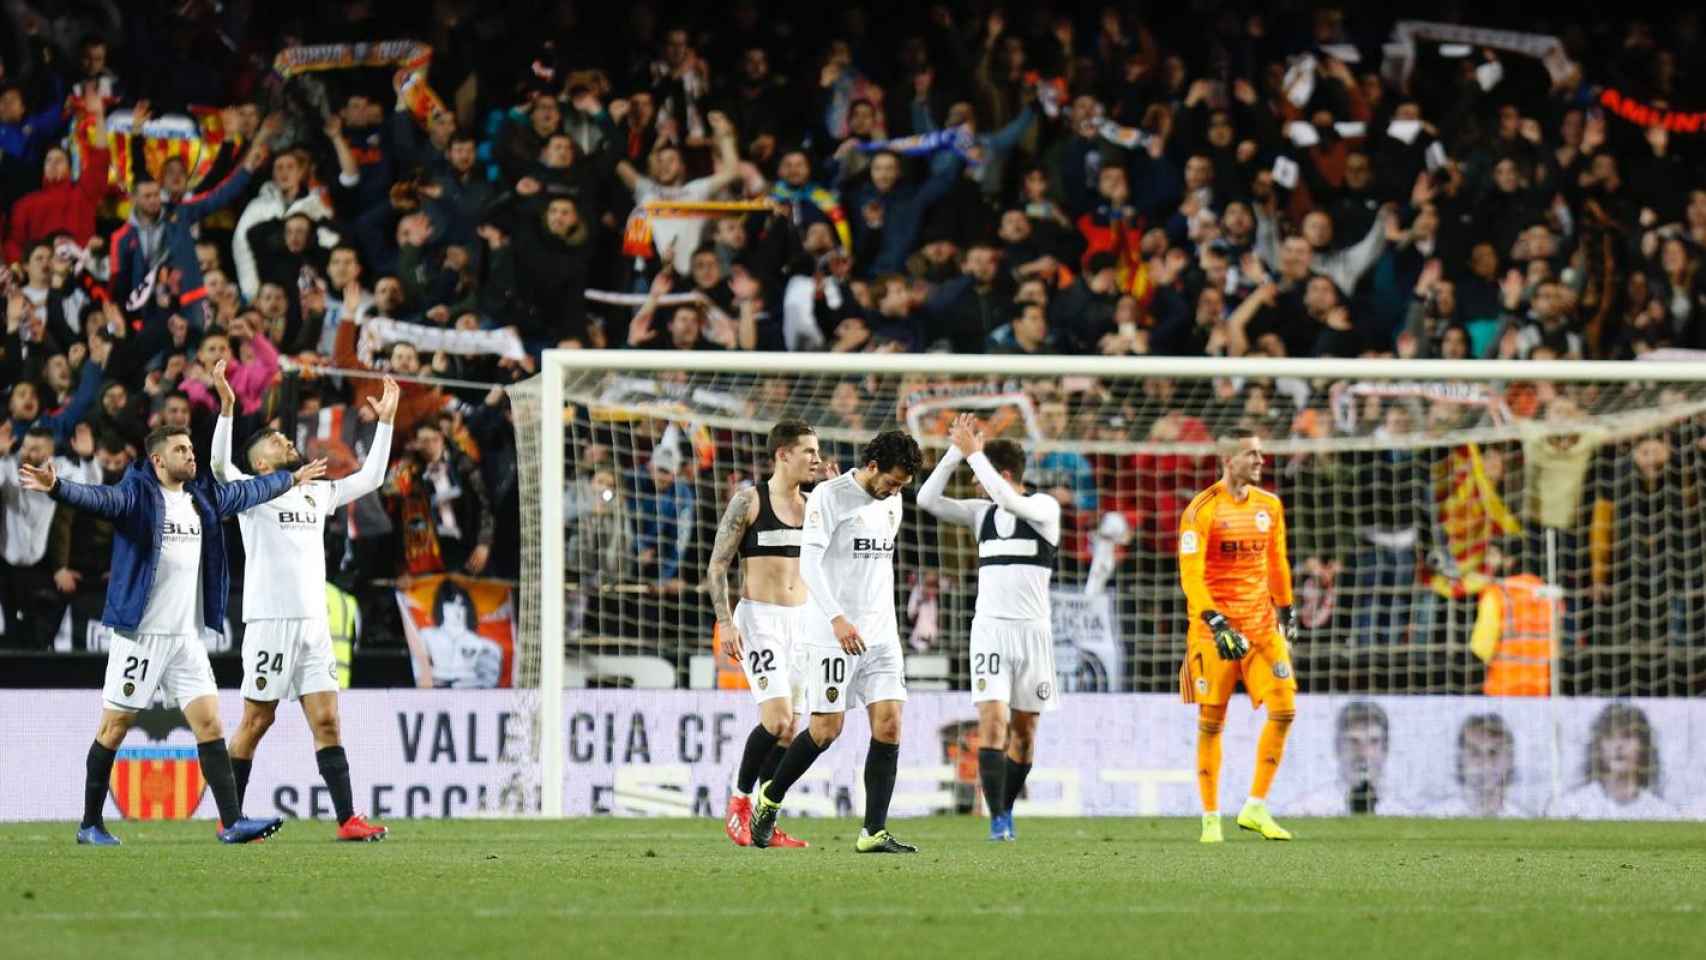 El Valencia celebrando el pase a la final de Copa del Rey / EFE